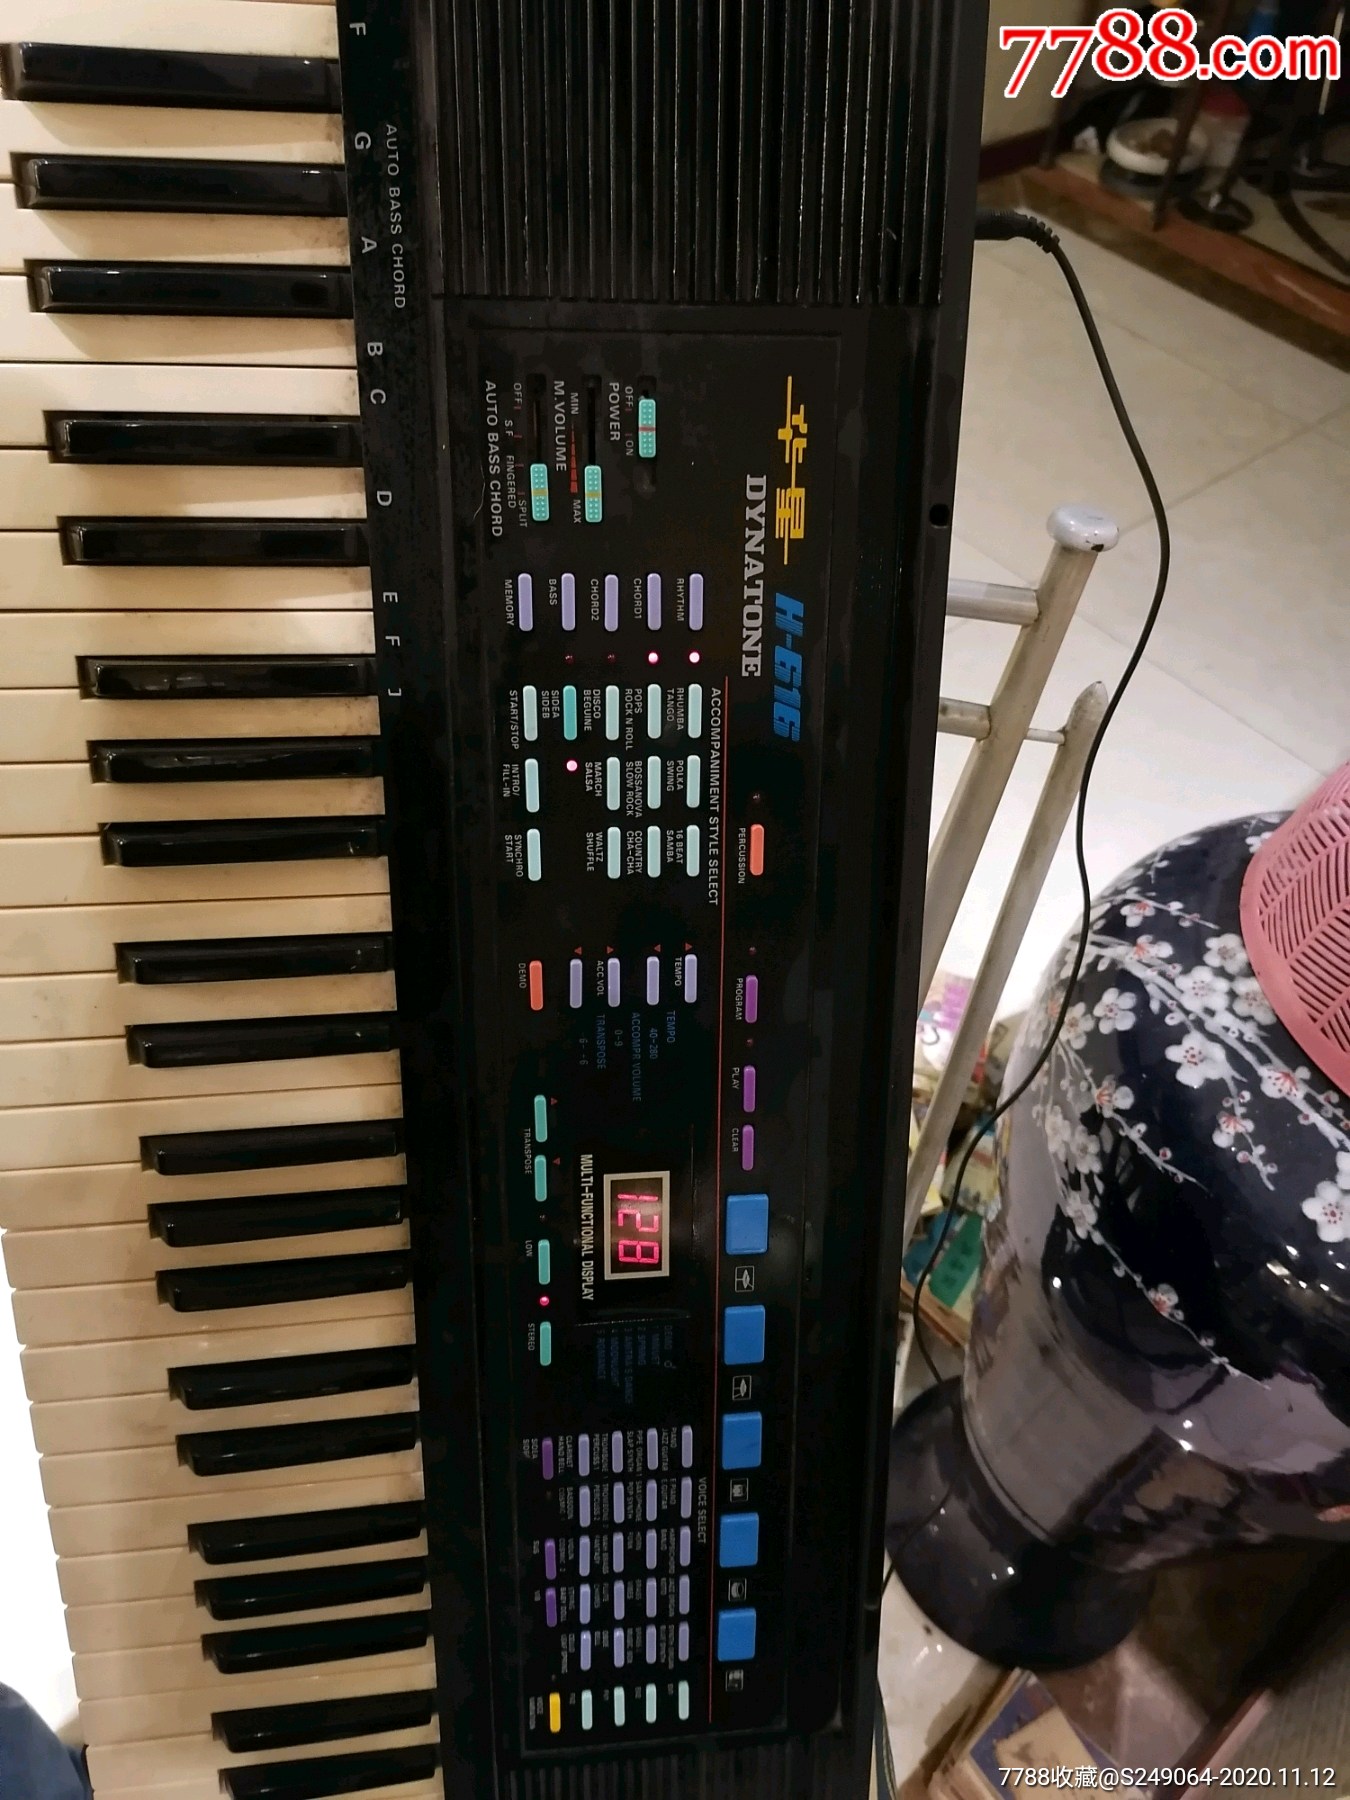 上海华星老式电子琴图片